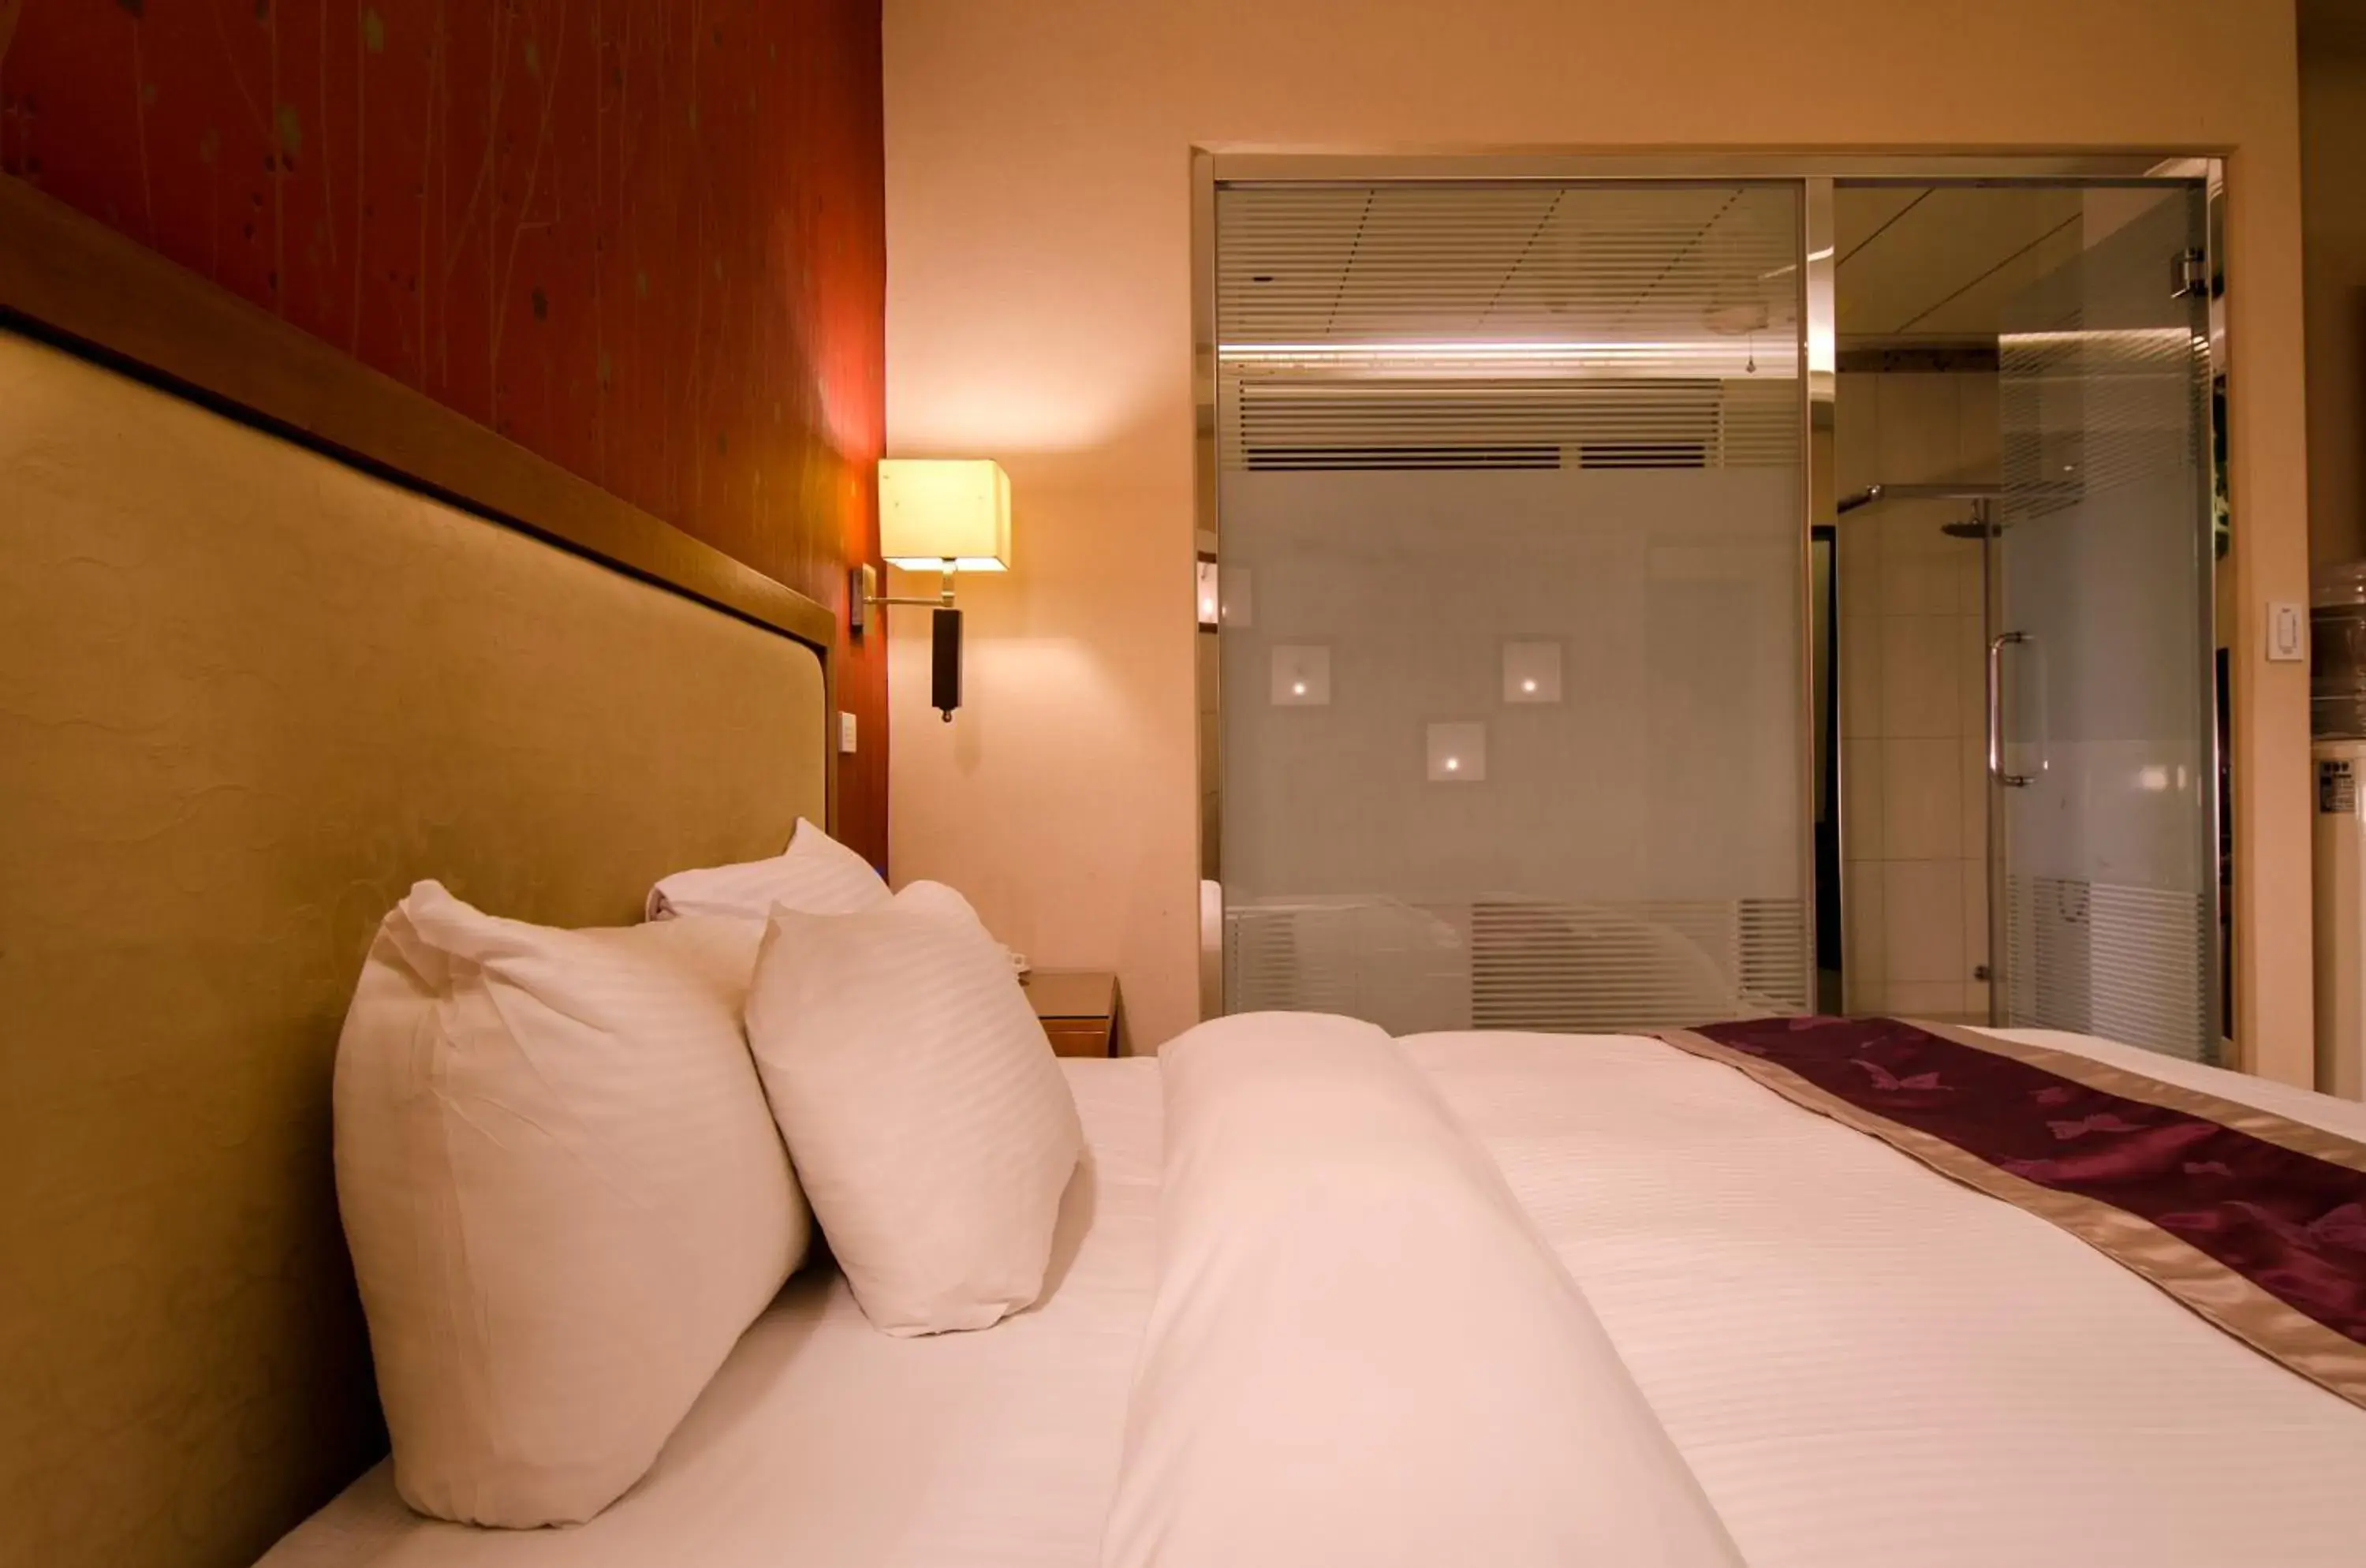 Bed in wogo hotel